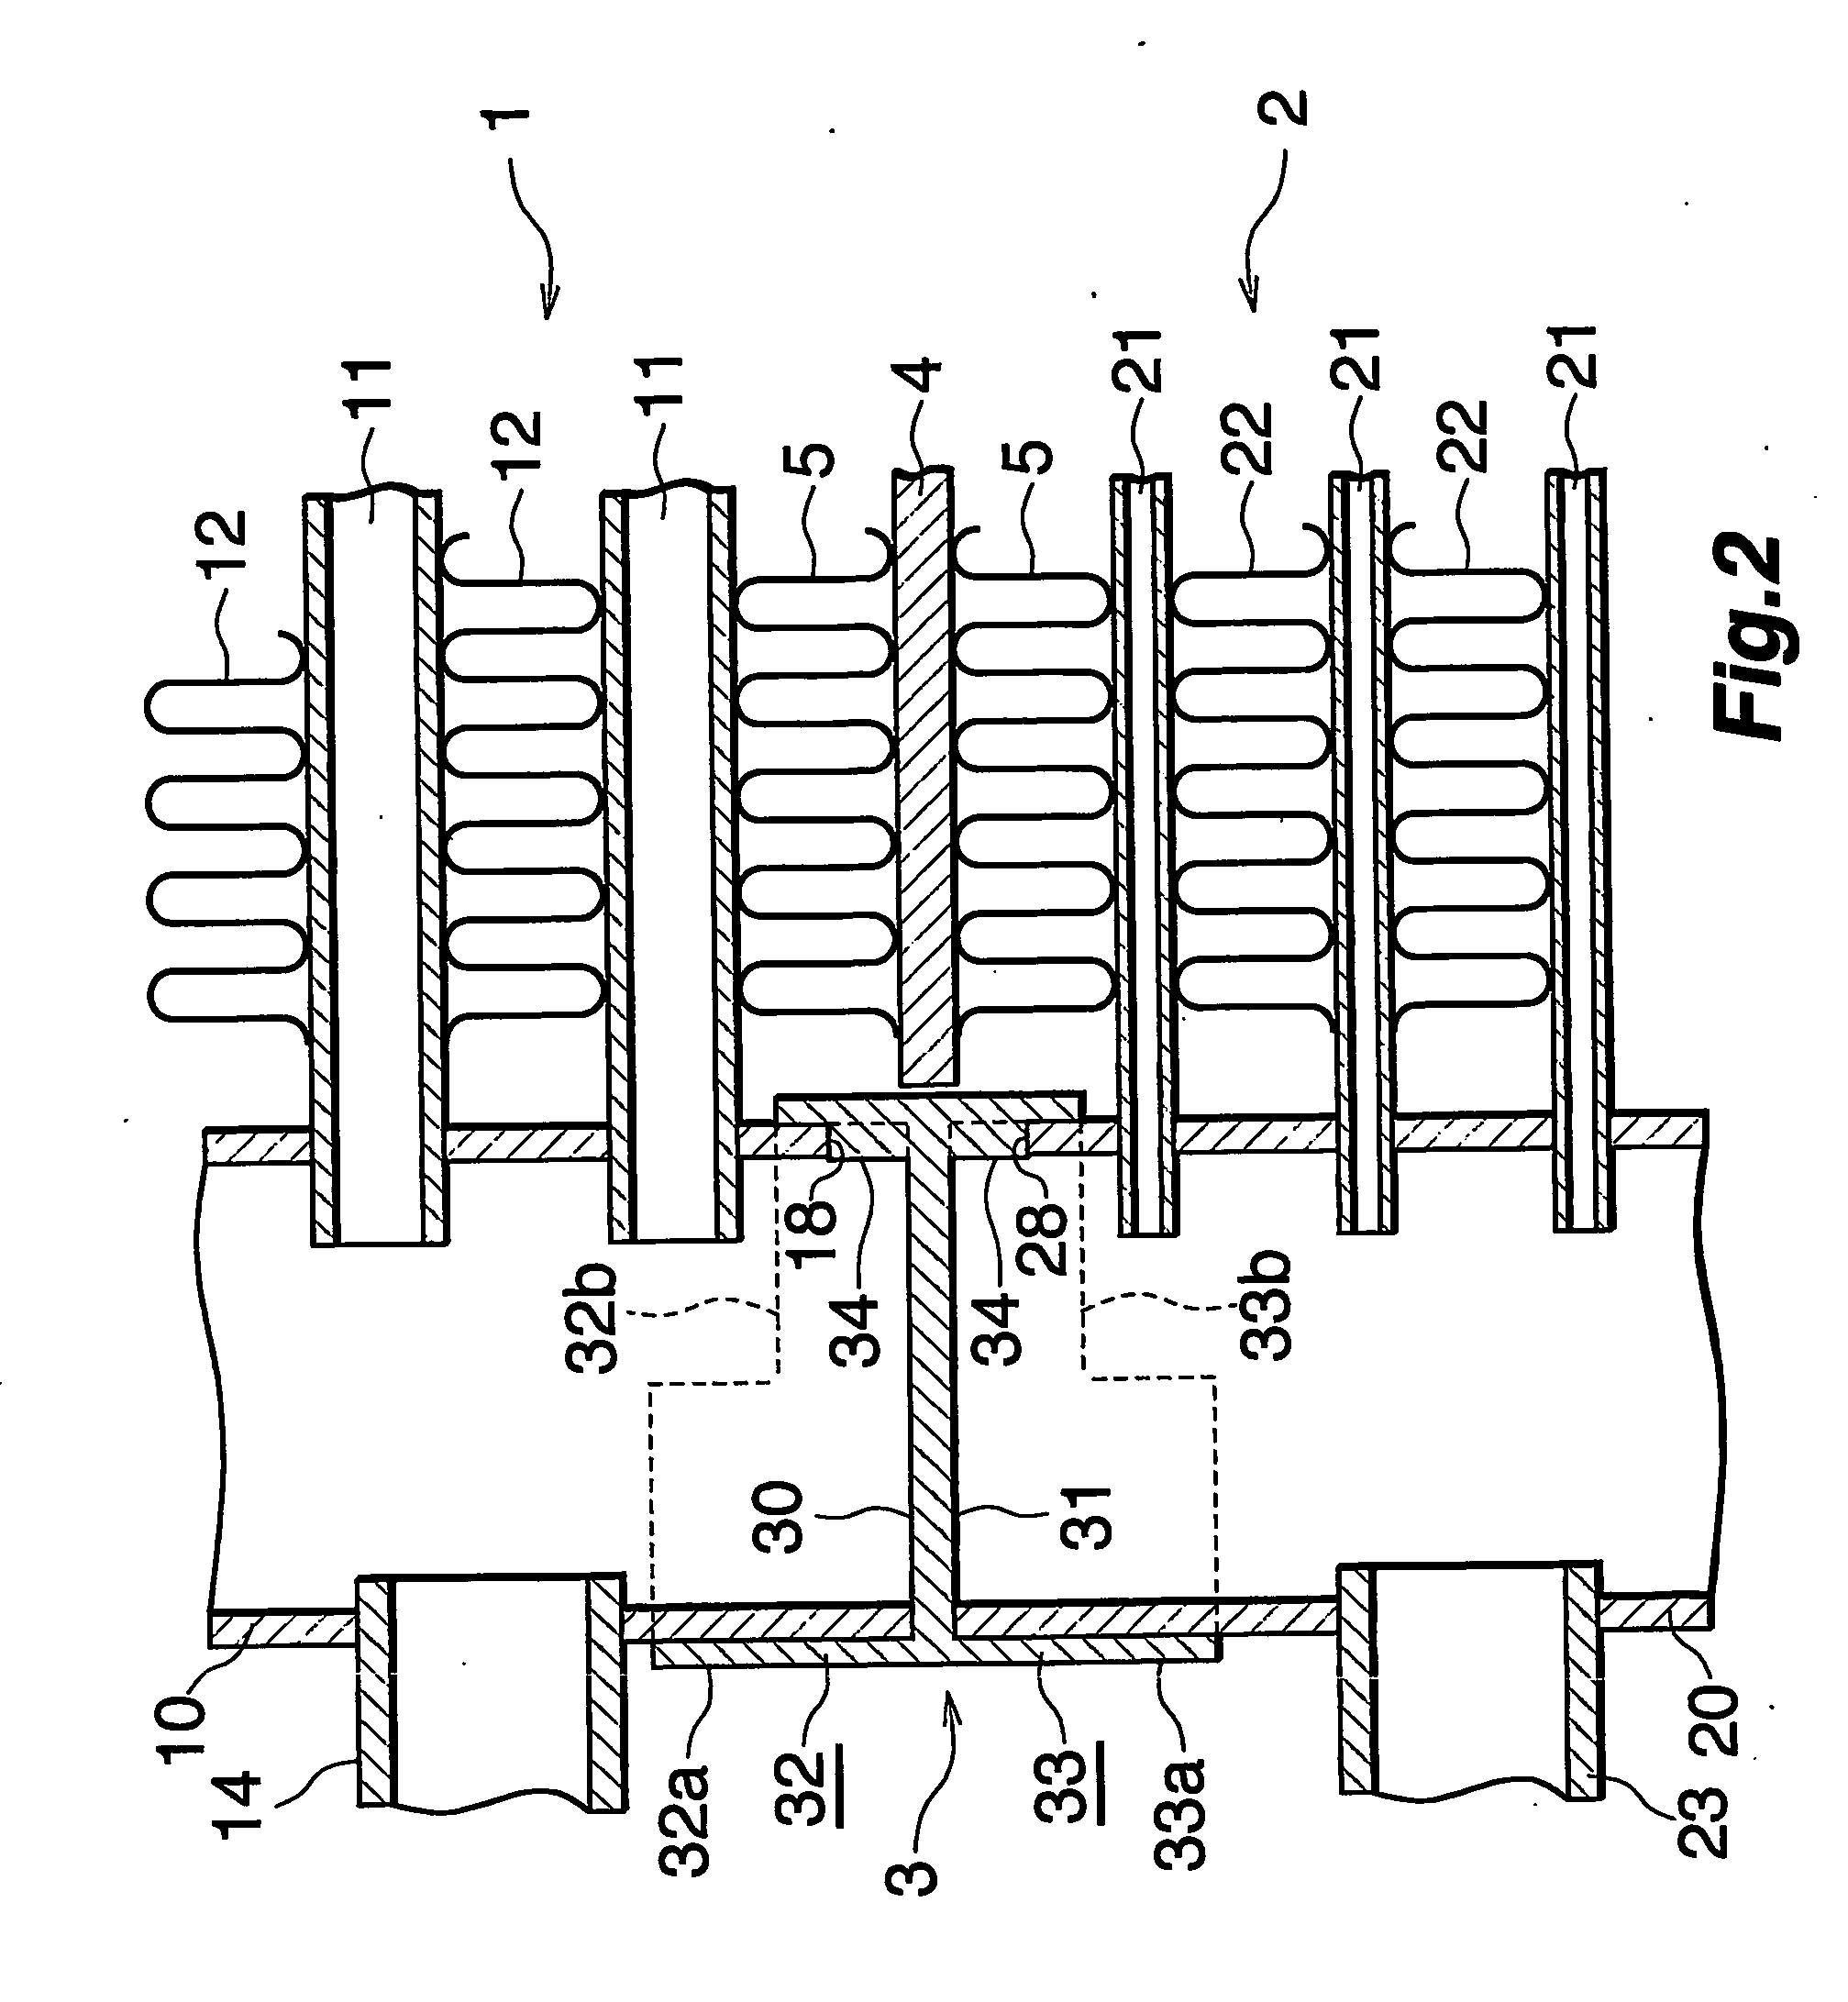 Unit-type heat exchanger